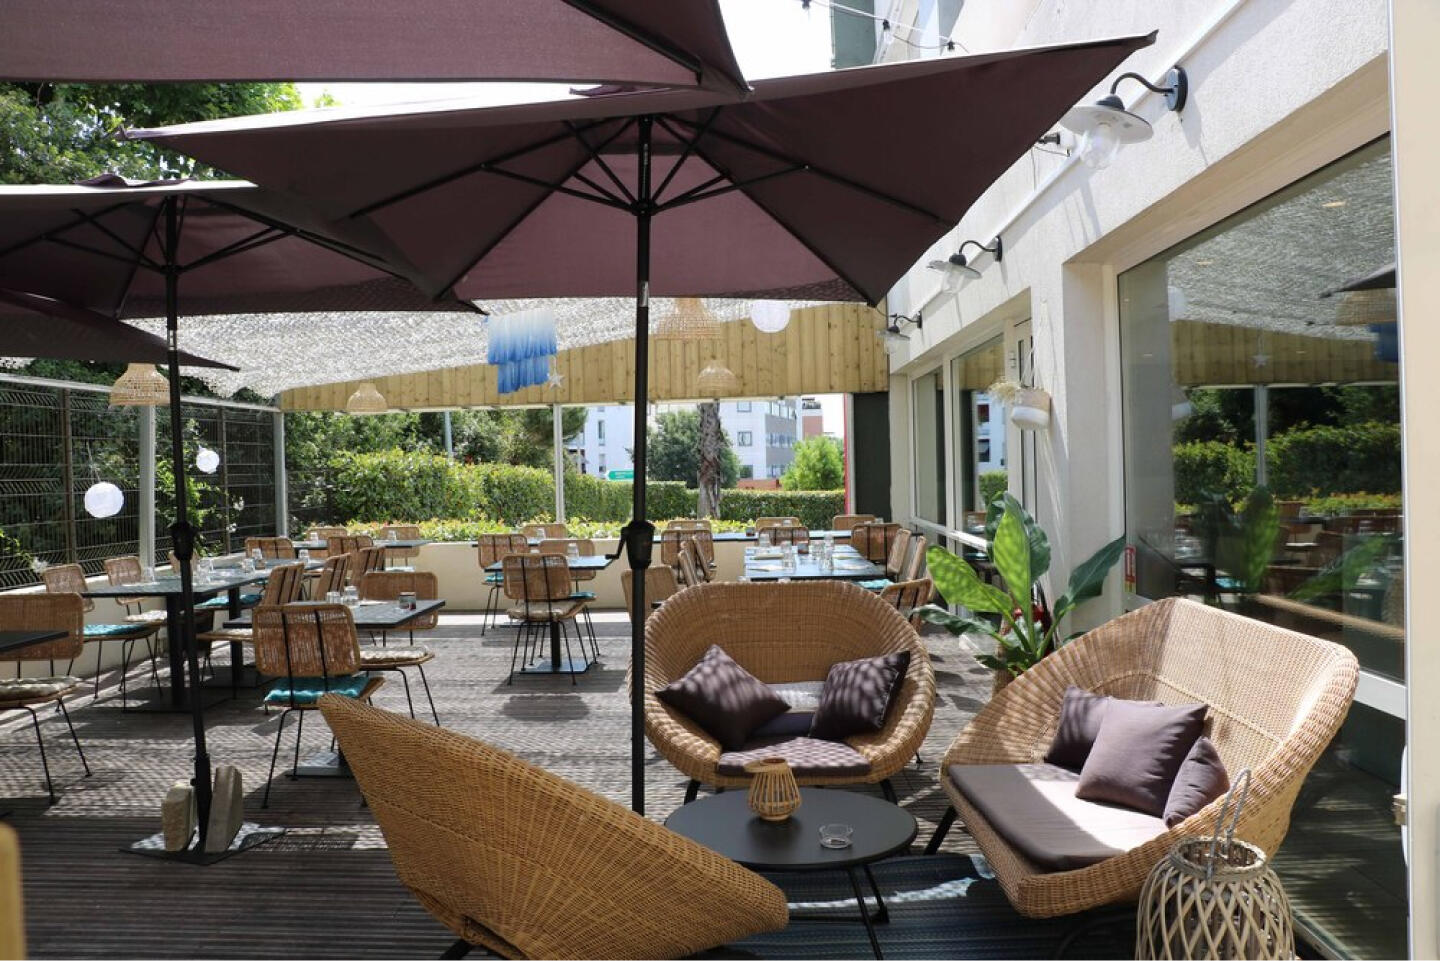 Terrasse extérieure du Restaurant Bistrot City Montpellier Ovalie avec des fauteuils en osier confortables sous un grand parasol marron, des tables dressées pour le repas et des plantes vertes, offrant un cadre détendu pour un repas en plein air.